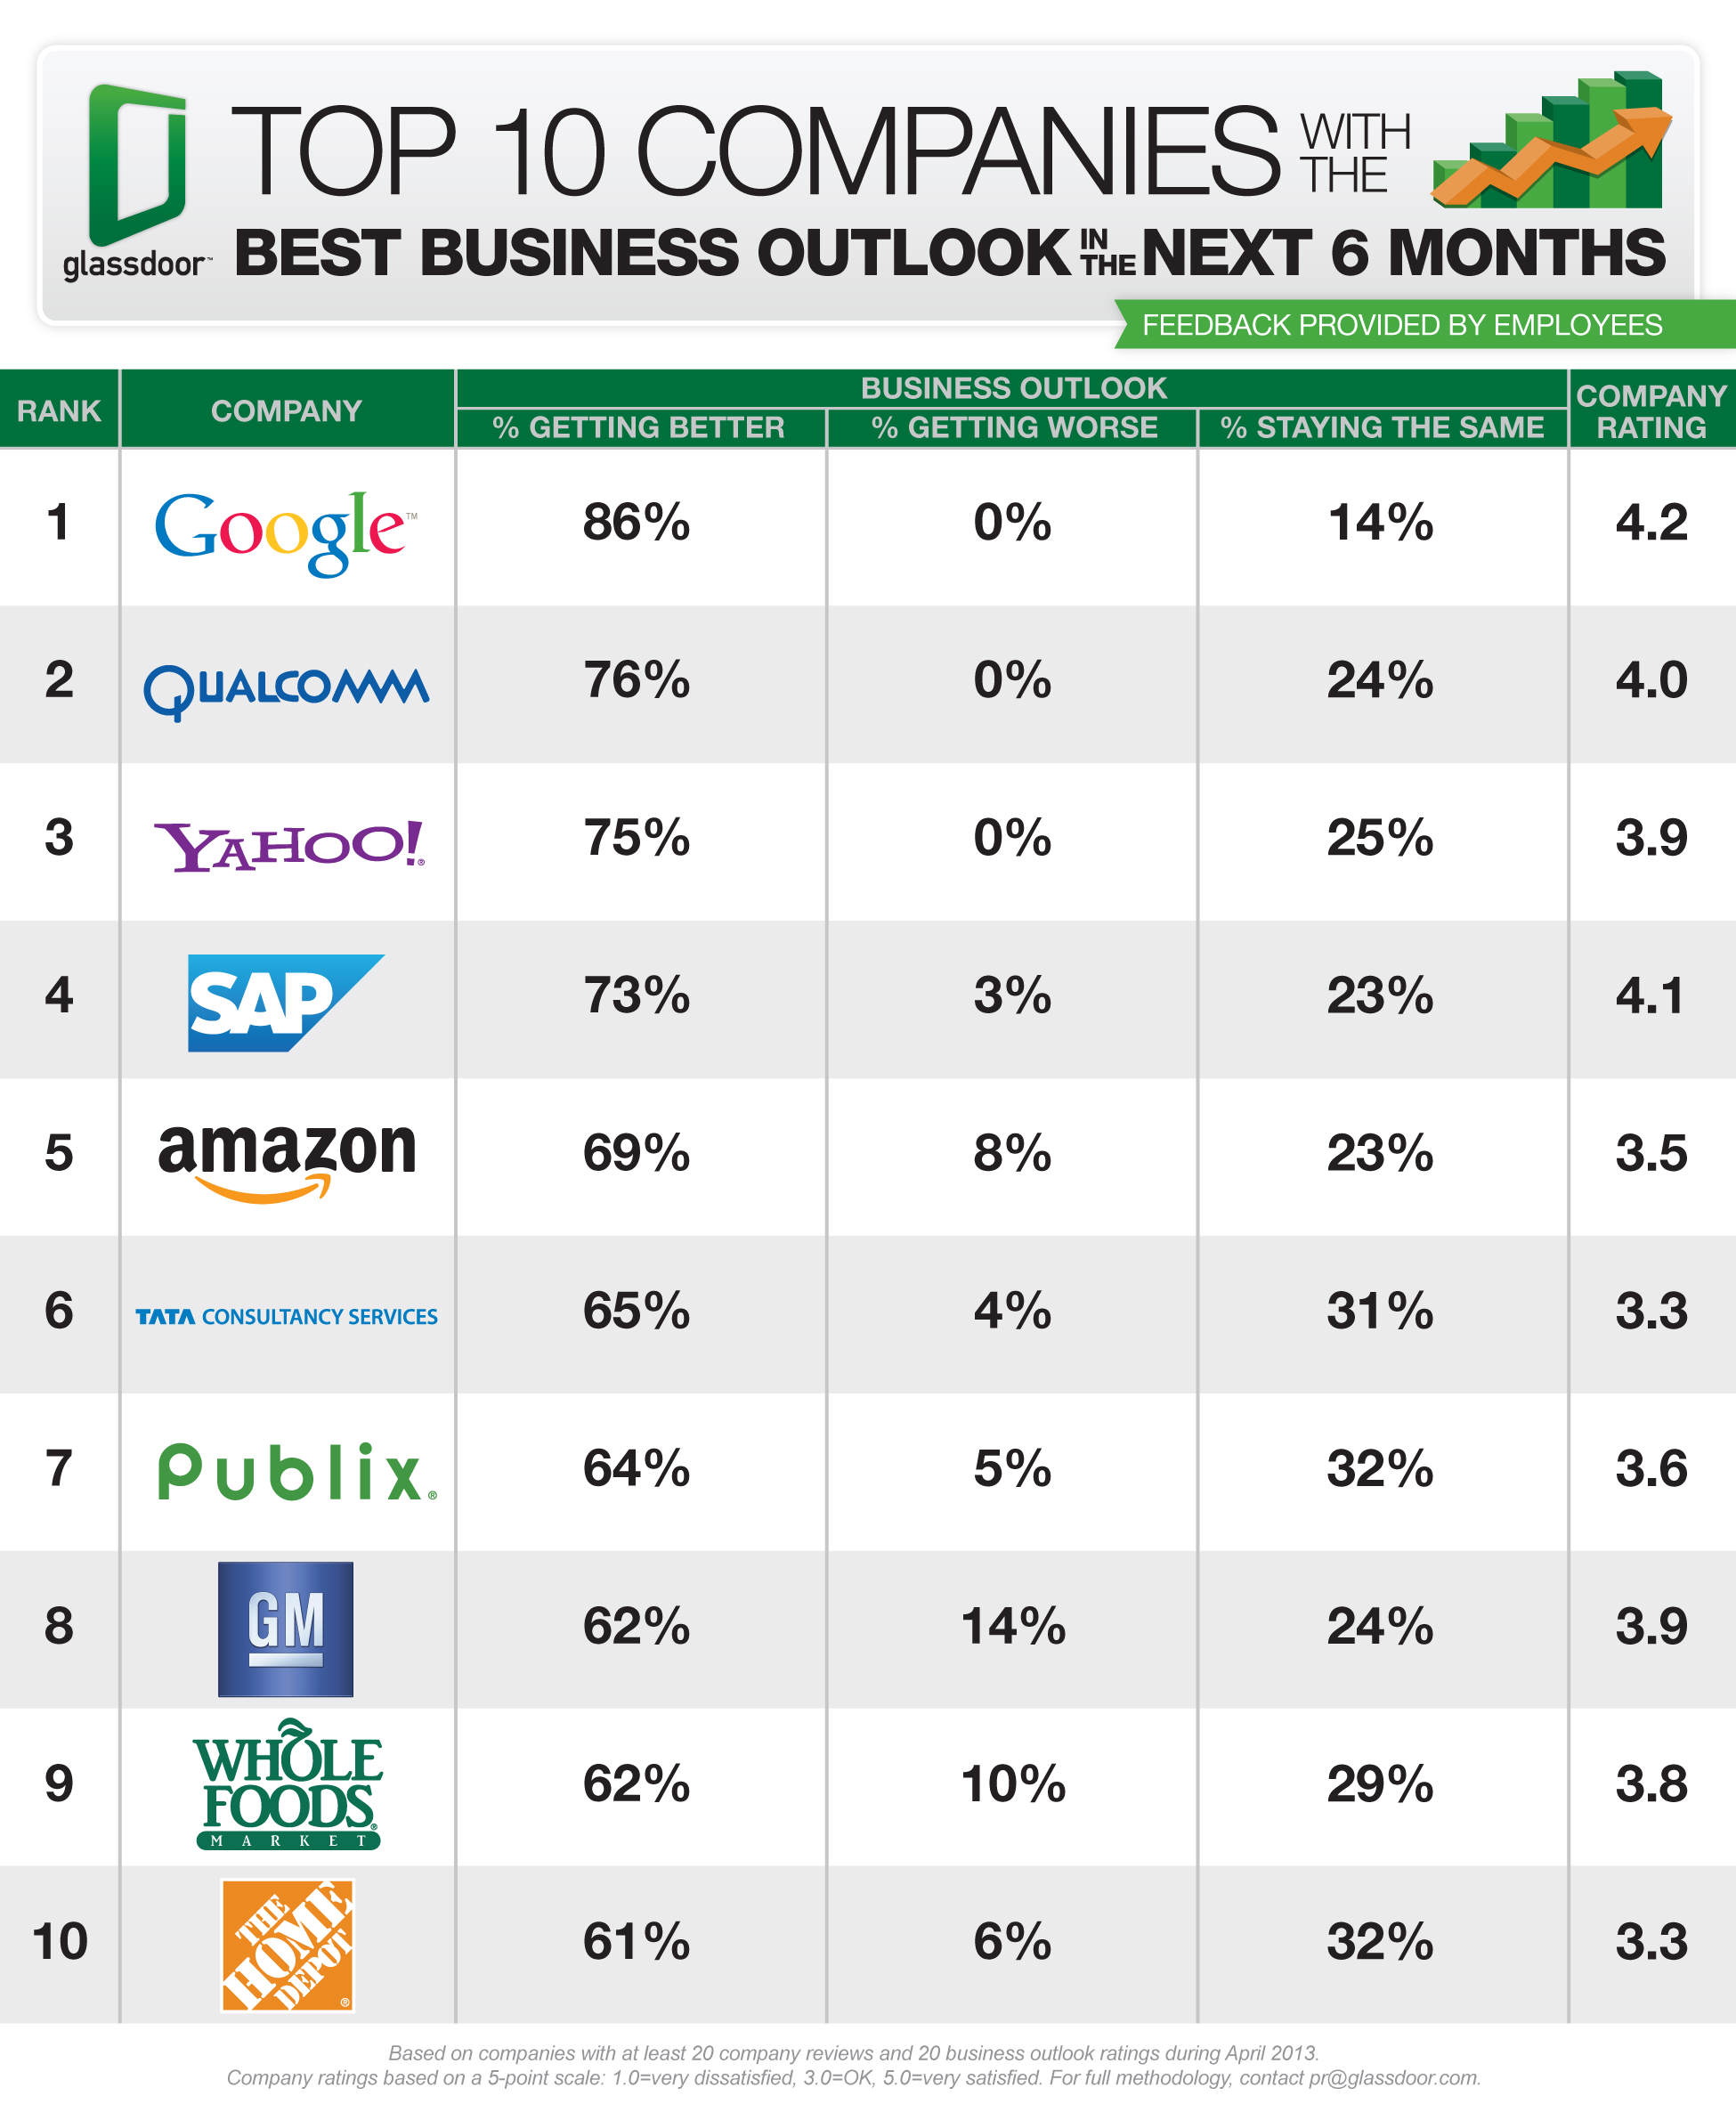 glassdoor-Top-10-Companies-Best-Business-Outlook